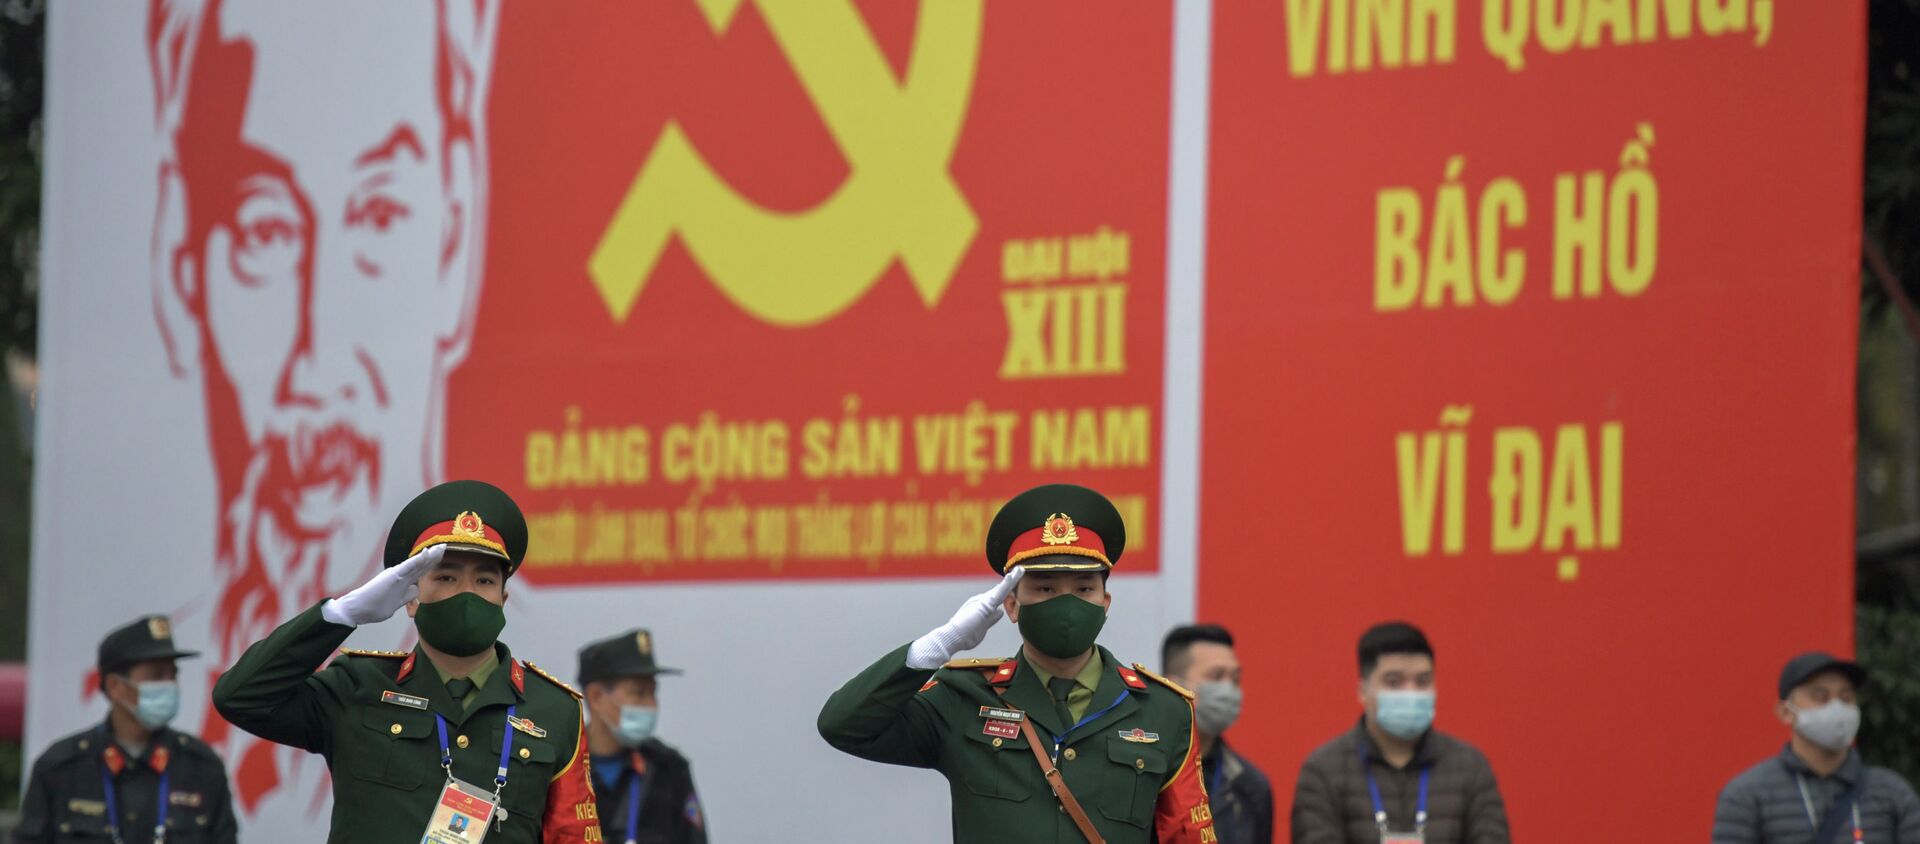 Các quân nhân trước biển quảng cáo về Đại hội lần thứ XIII của Đảng Cộng sản Việt Nam tại Hà Nội - Sputnik Việt Nam, 1920, 26.01.2021